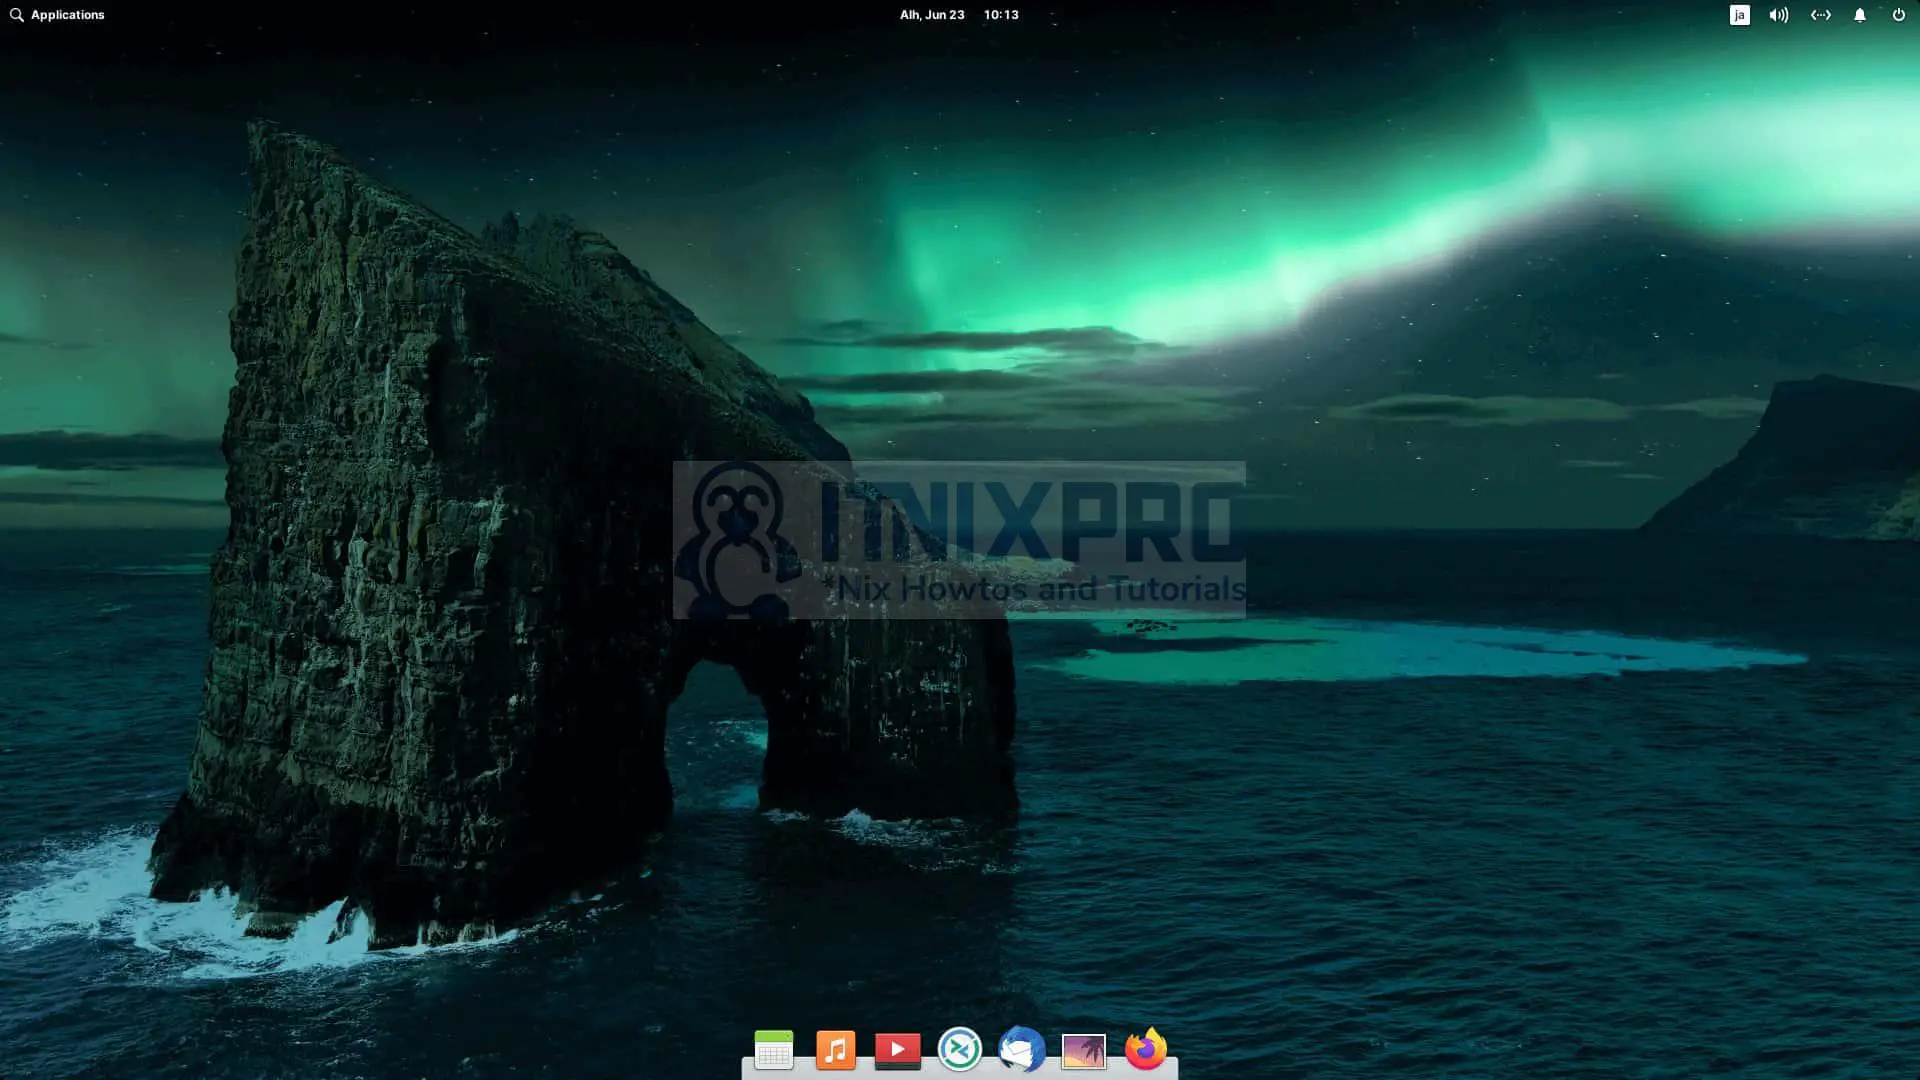 Install Pantheon Desktop Environment on Ubuntu 22.04